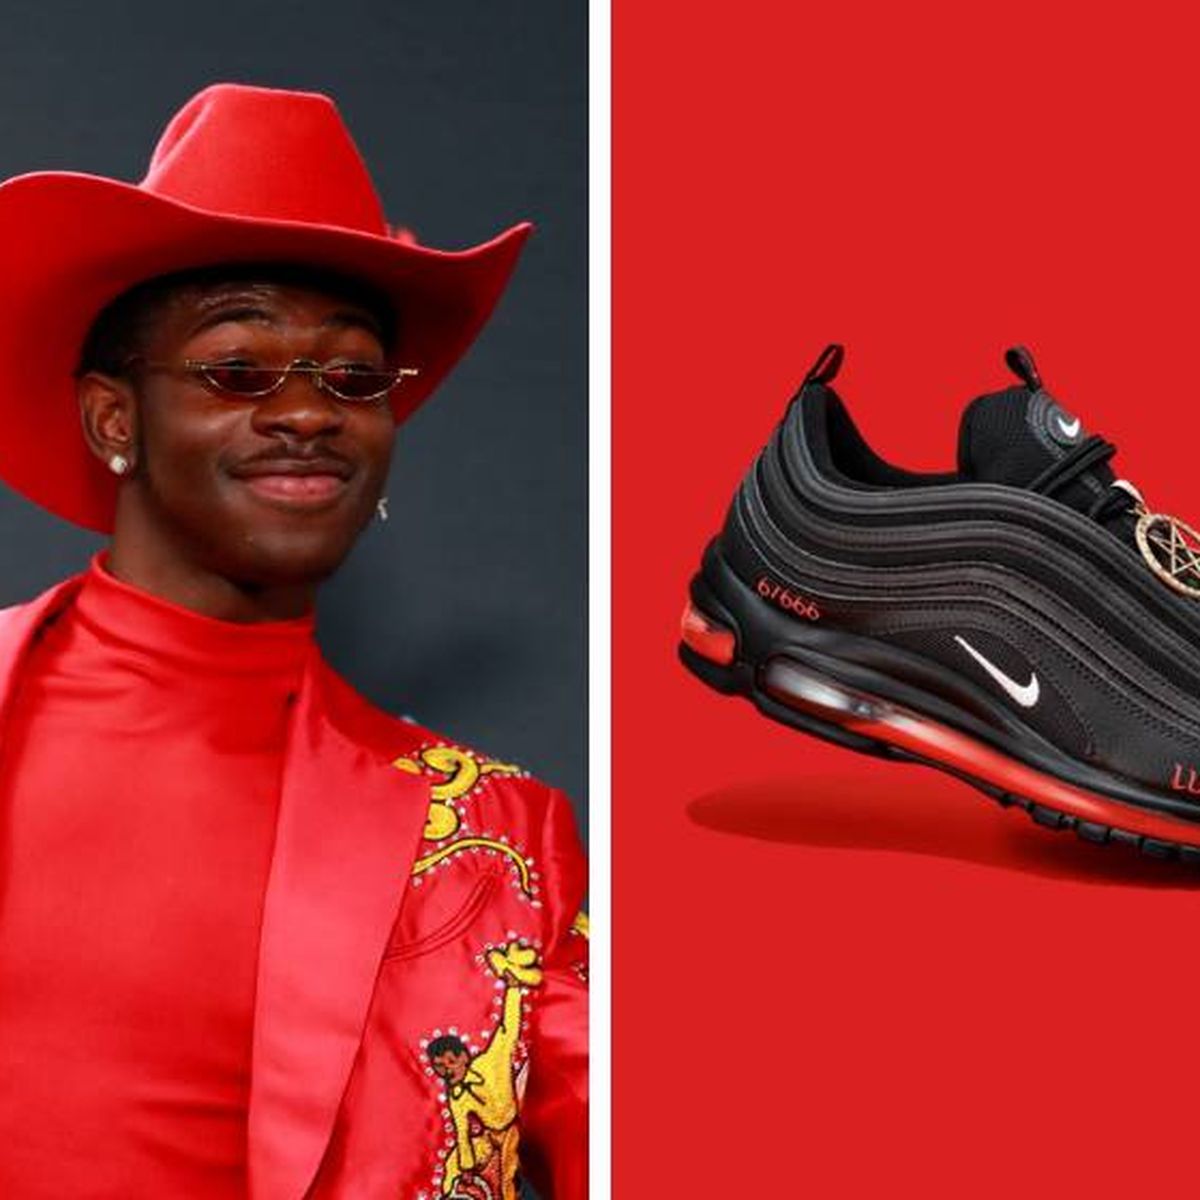 El rapero Lil X y sus zapatillas con sangre "Nike no respalda diseño"